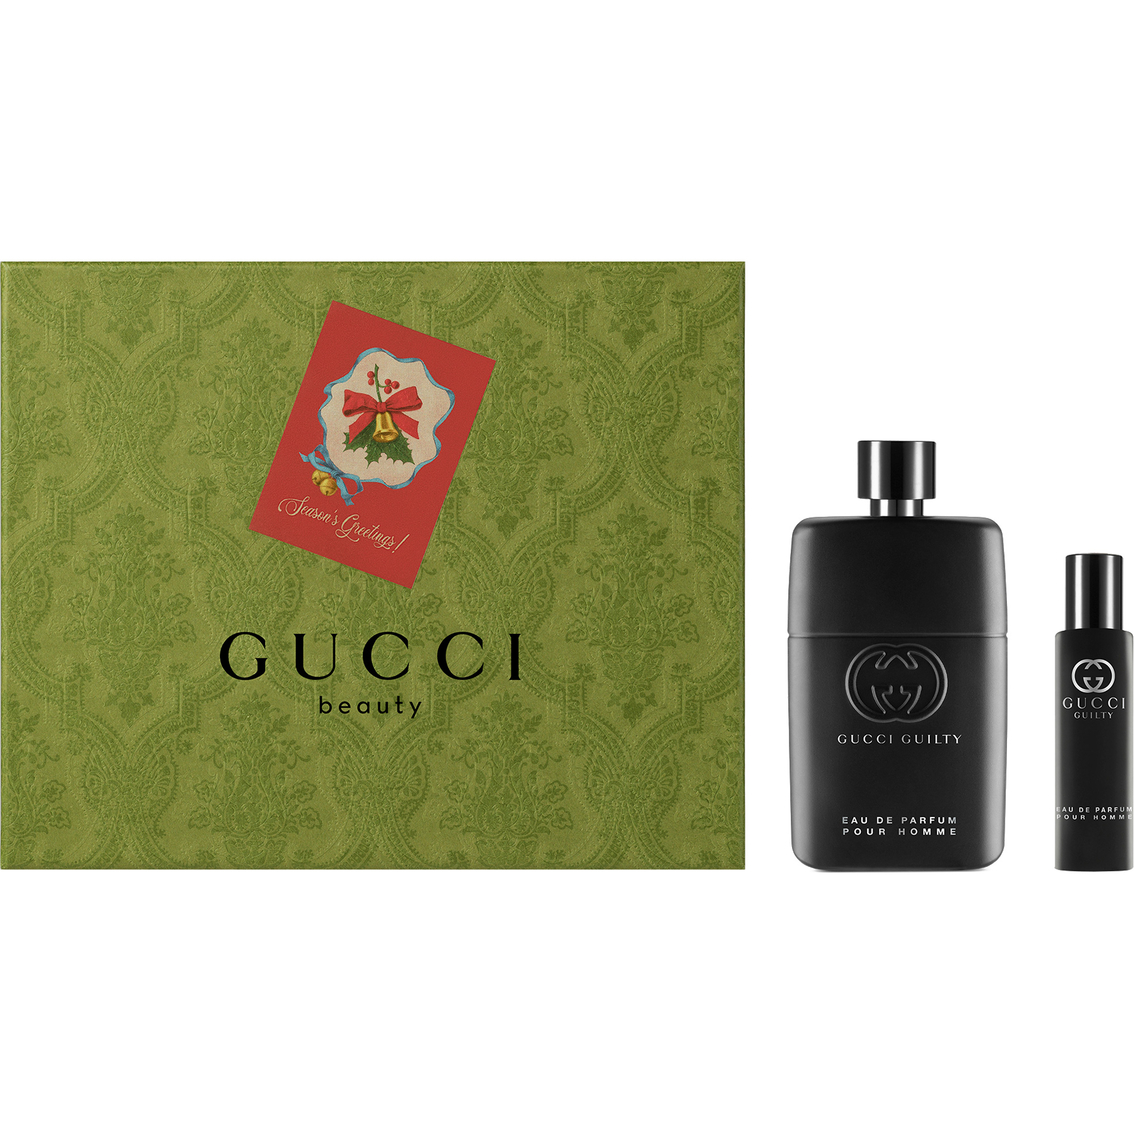 Guilty Eau de Parfum Pour Homme - Gucci